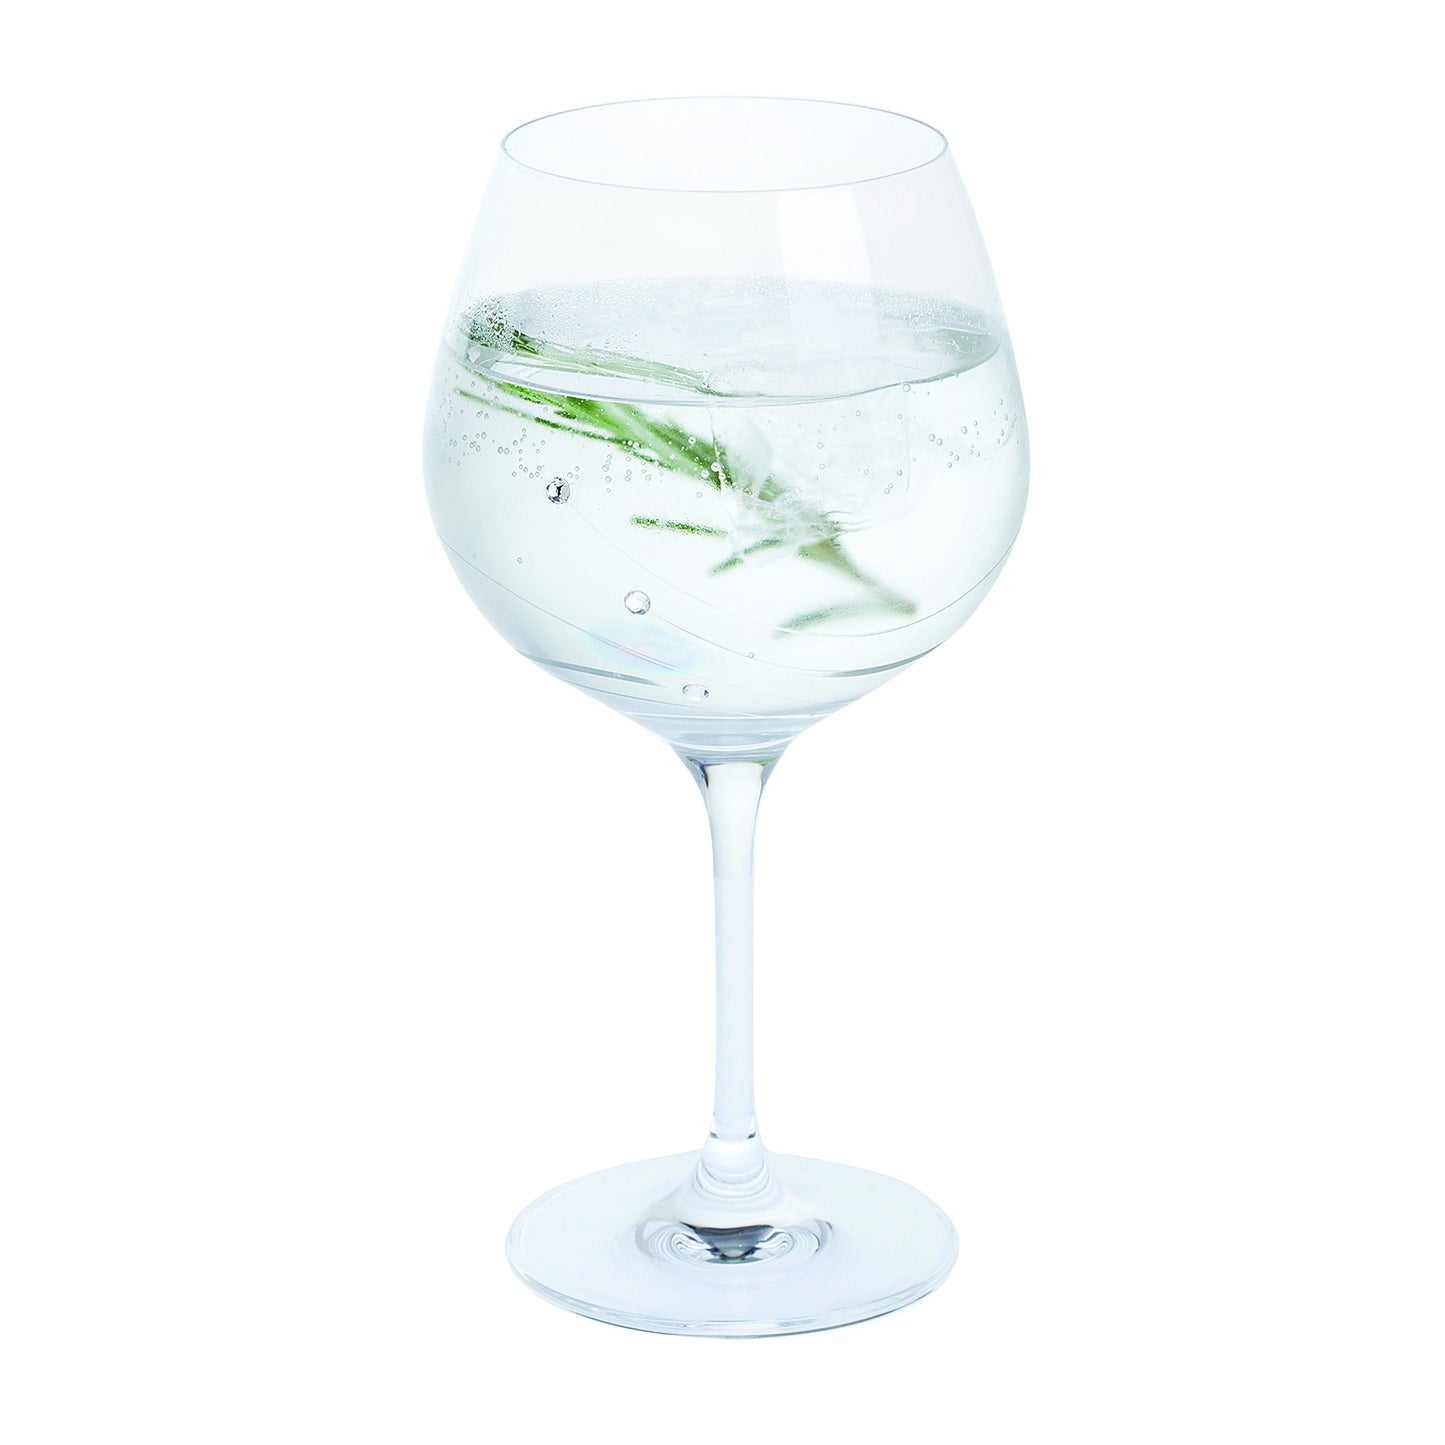 Glitz Gin and Tonic Copa Glass